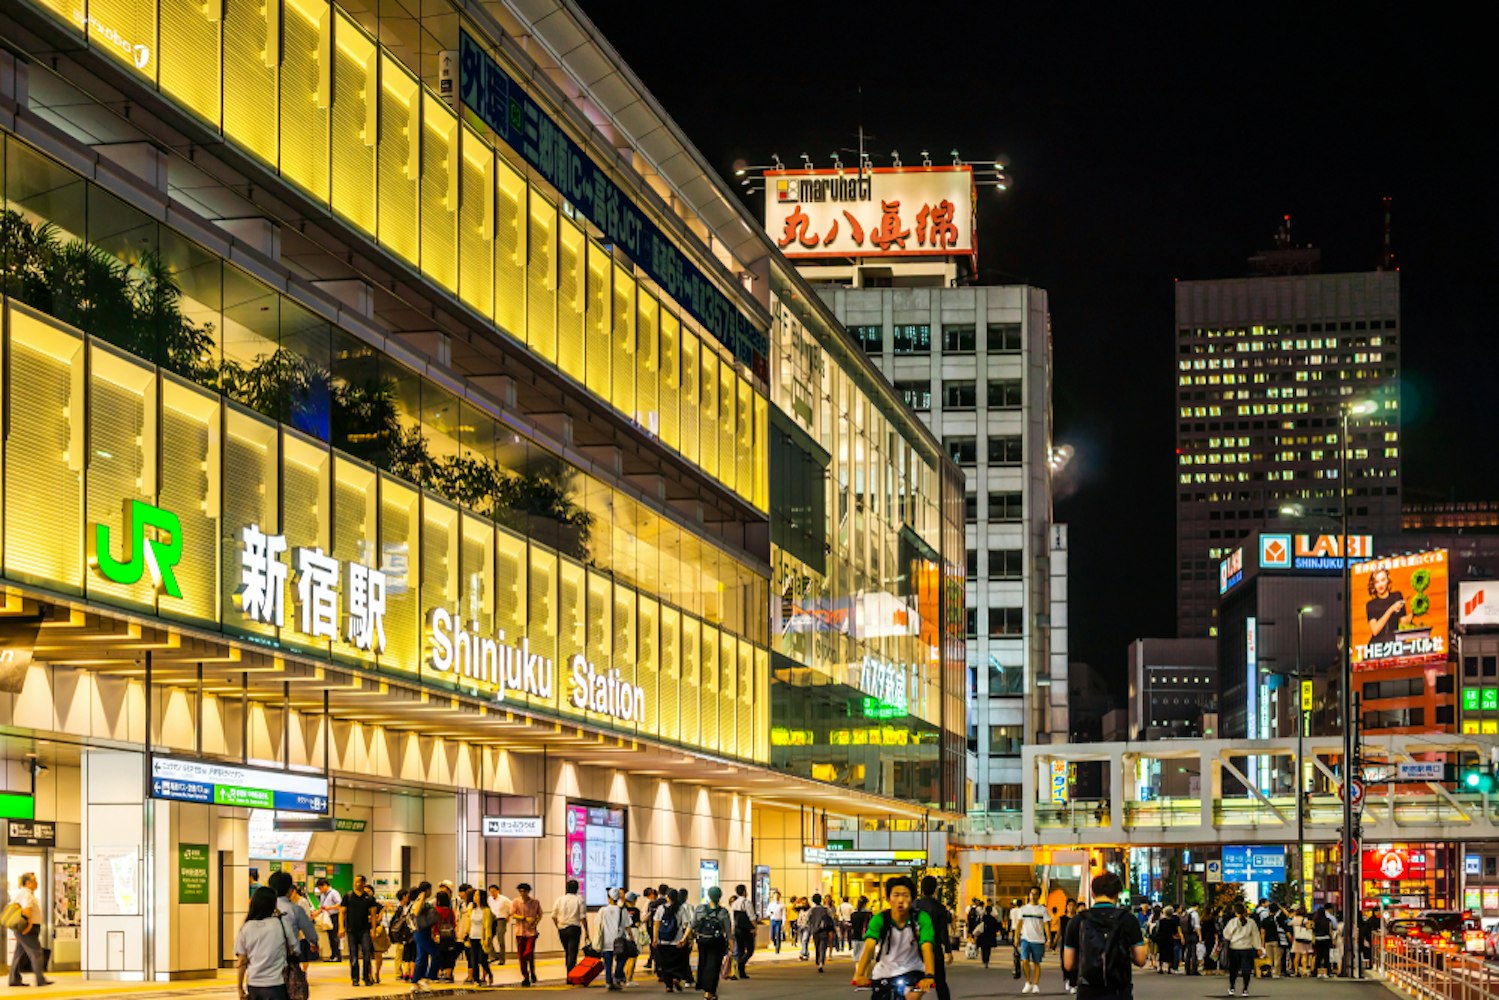 Night View of JR Shinjuku Station